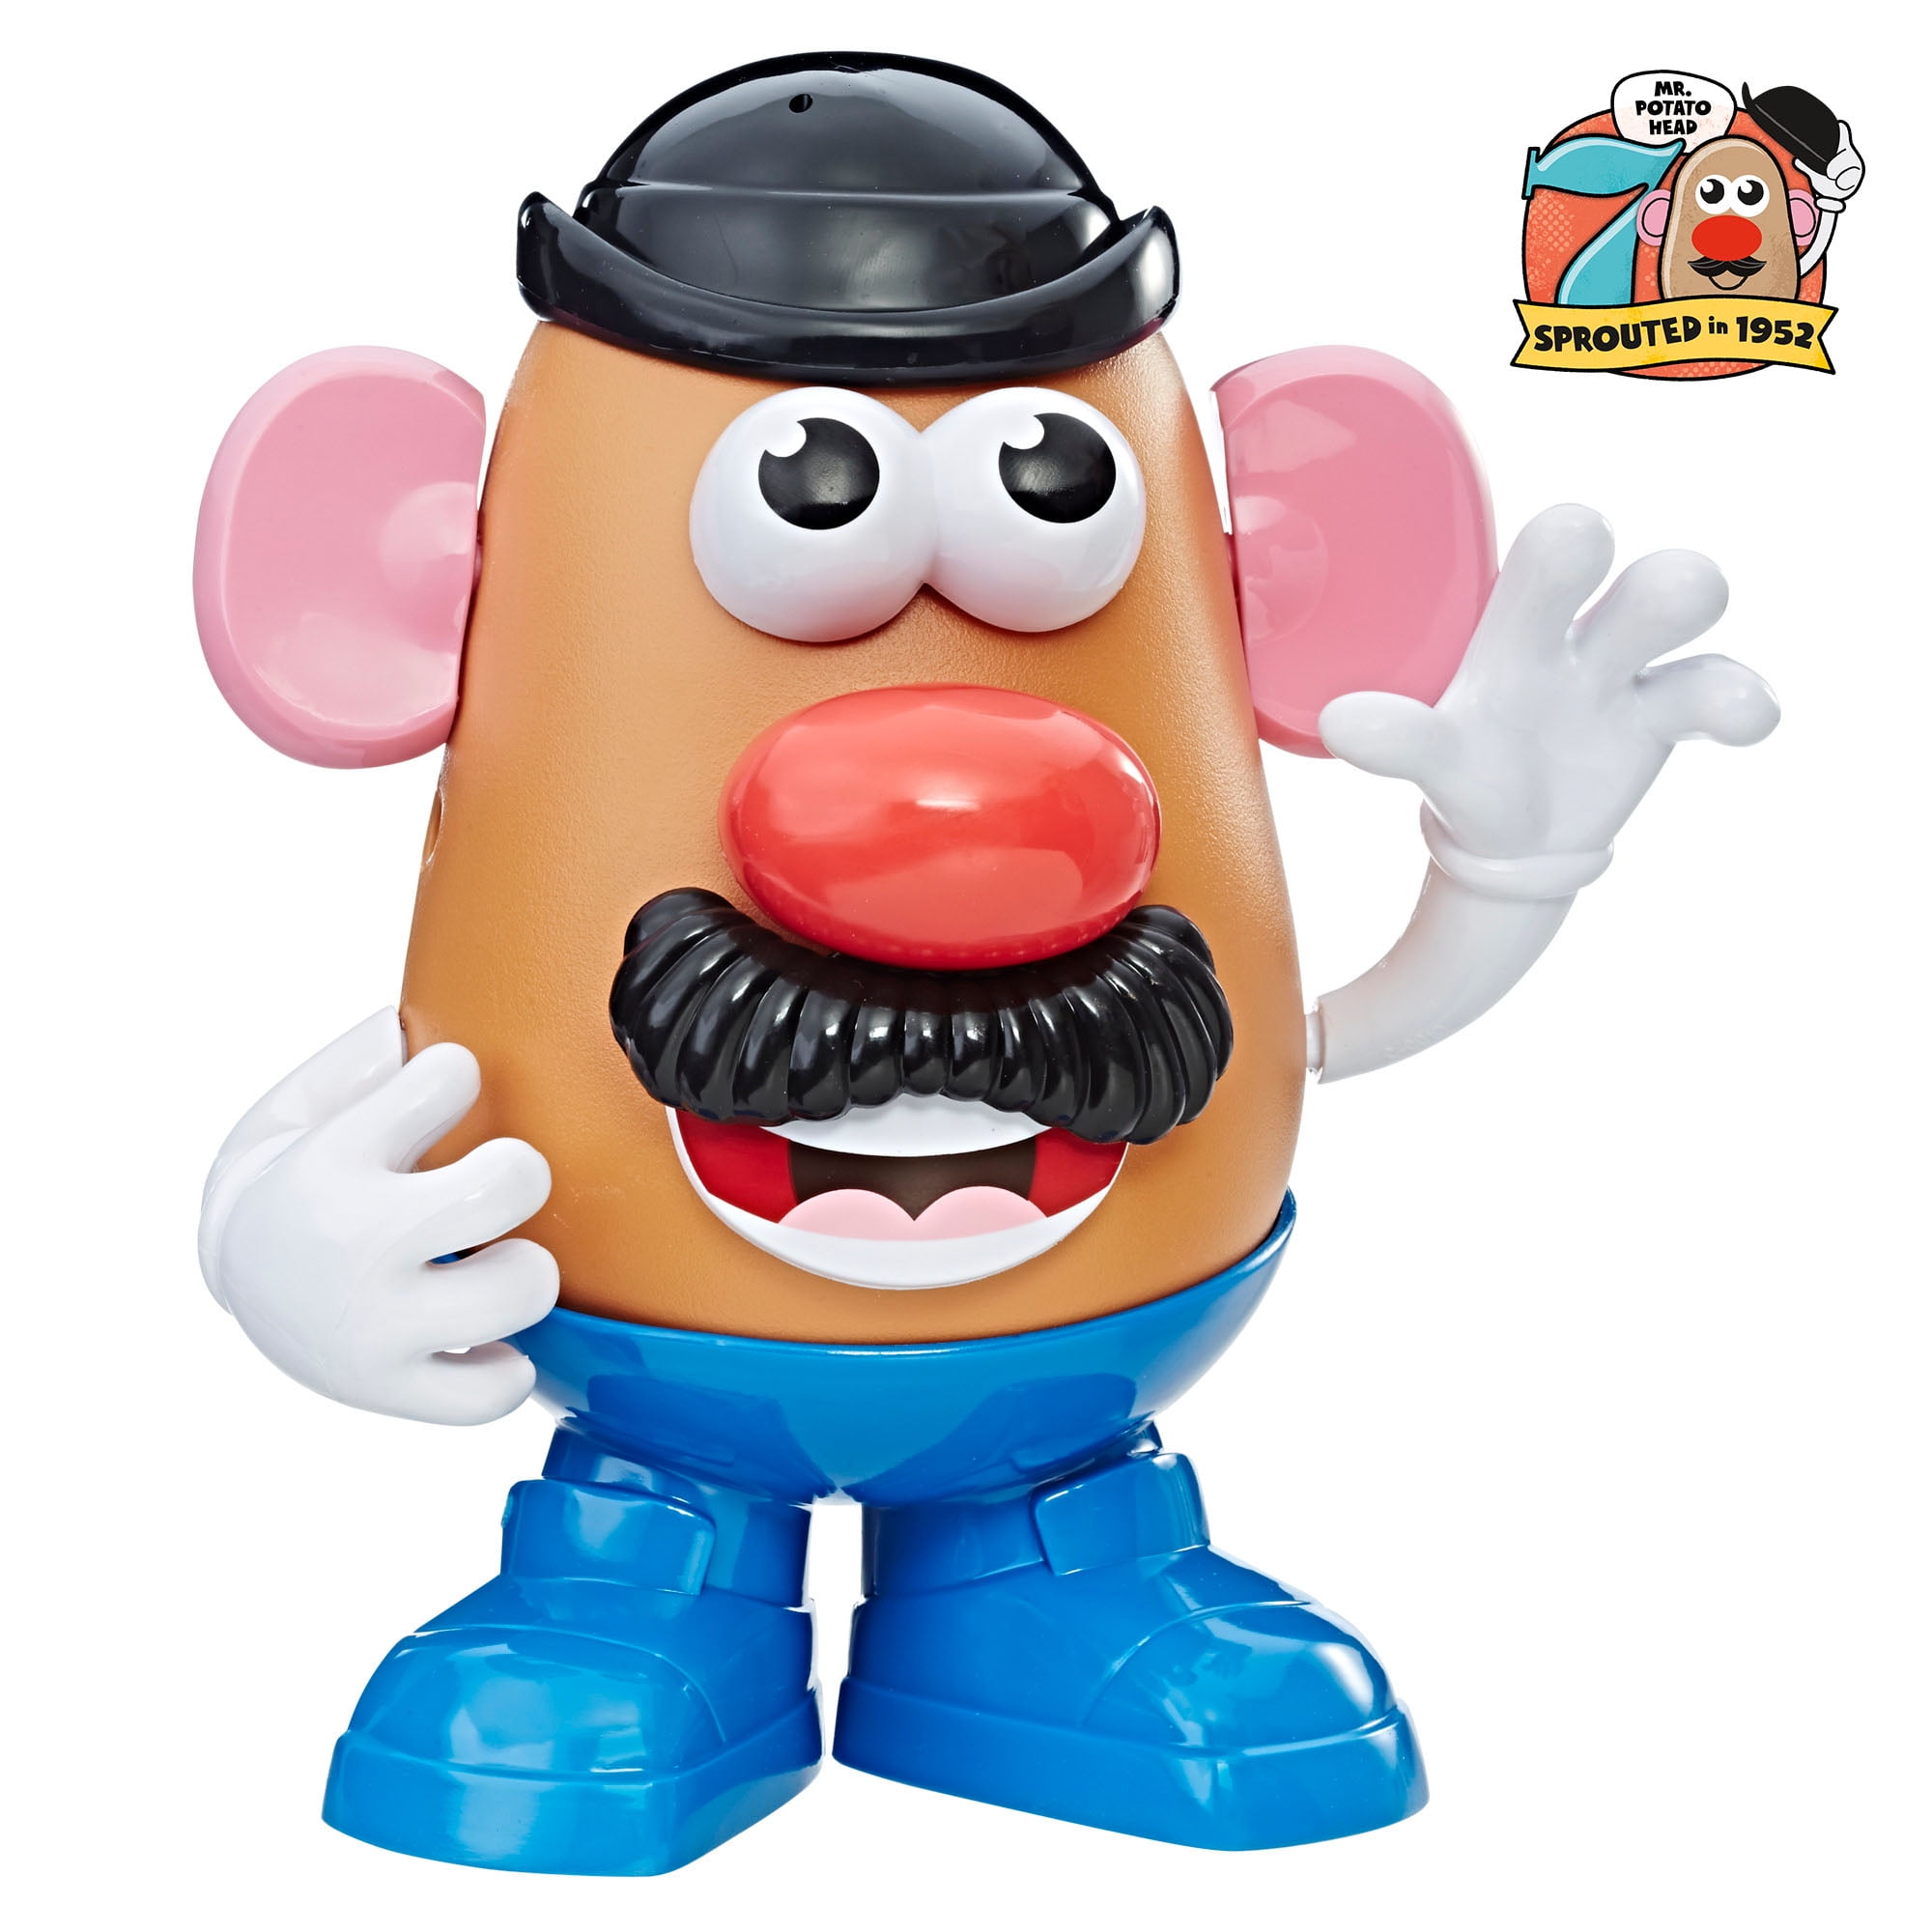 Mr Potato Head replacement Parts *Hands* you pick.. Please Read Description! 